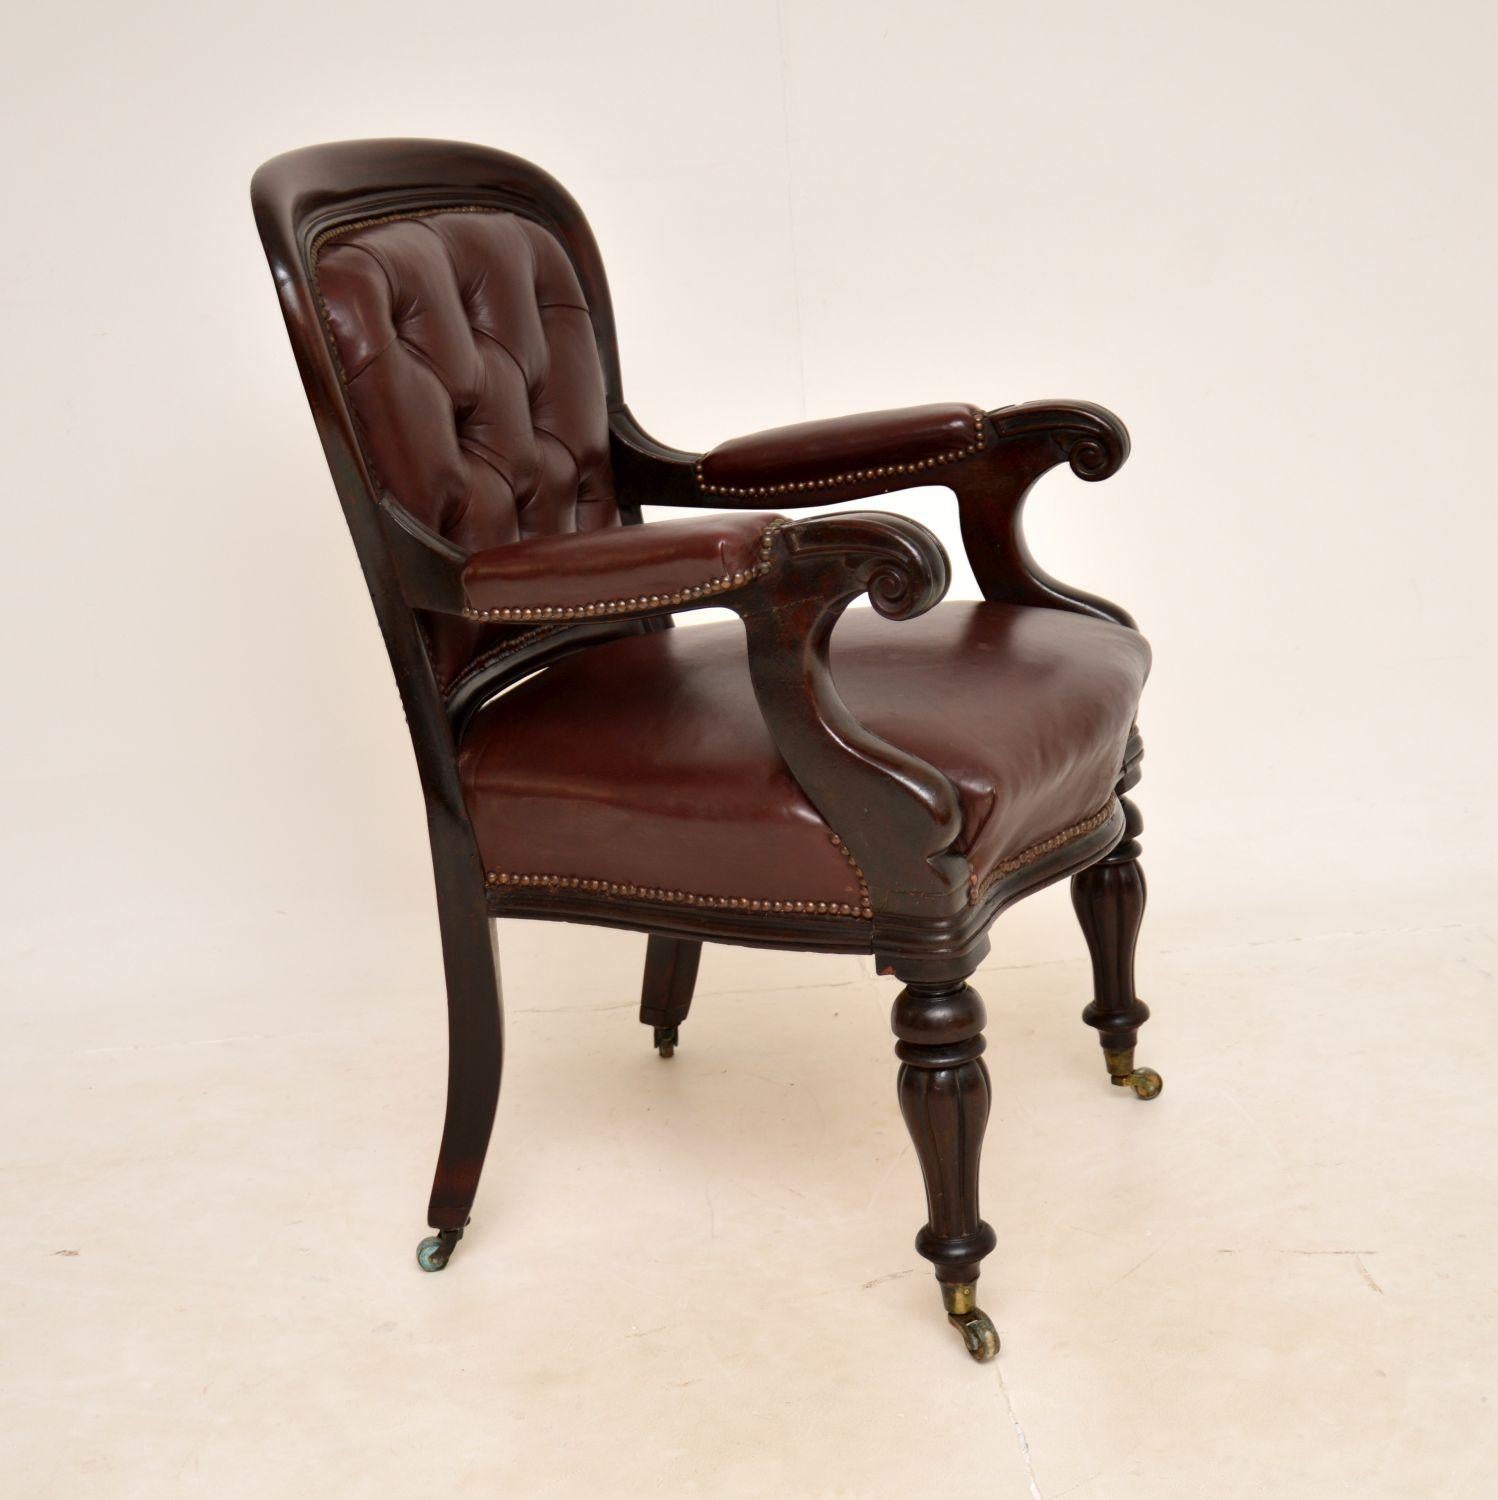 British Antique William IV Leather Desk Chair